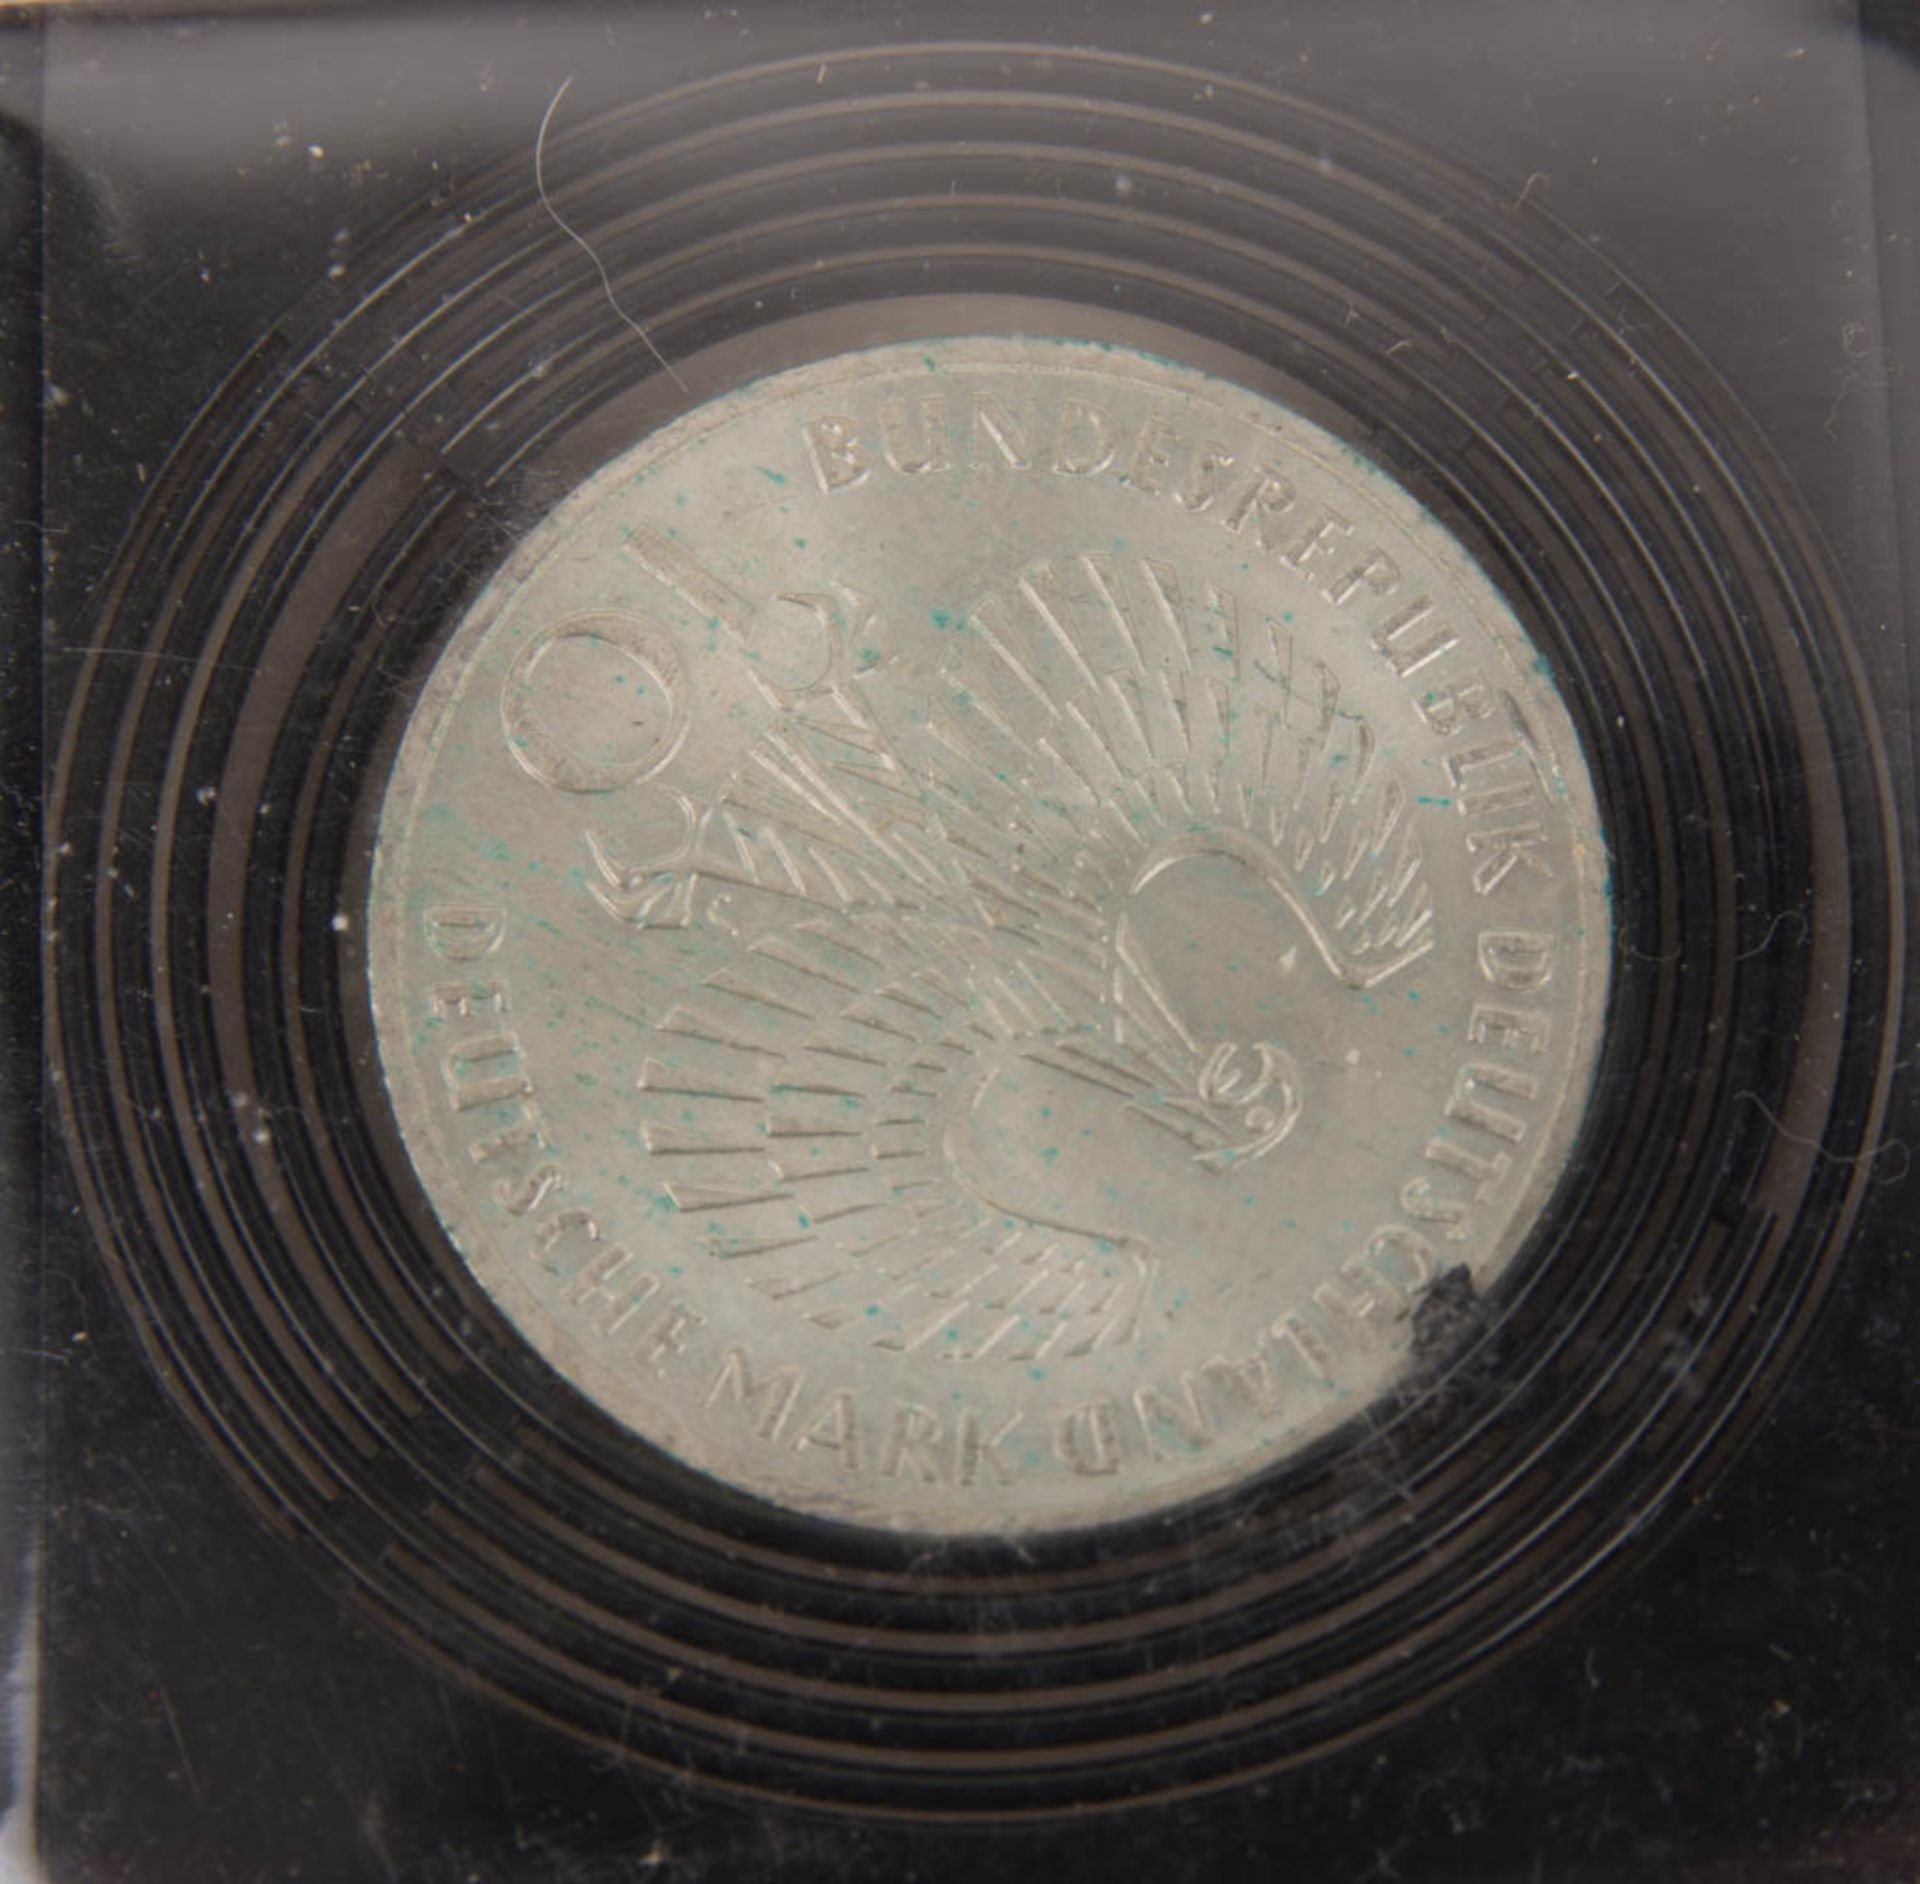 BRD, Drei 10-DM-Silbergedenkmünzen, Olympiade 1972. - Bild 6 aus 7